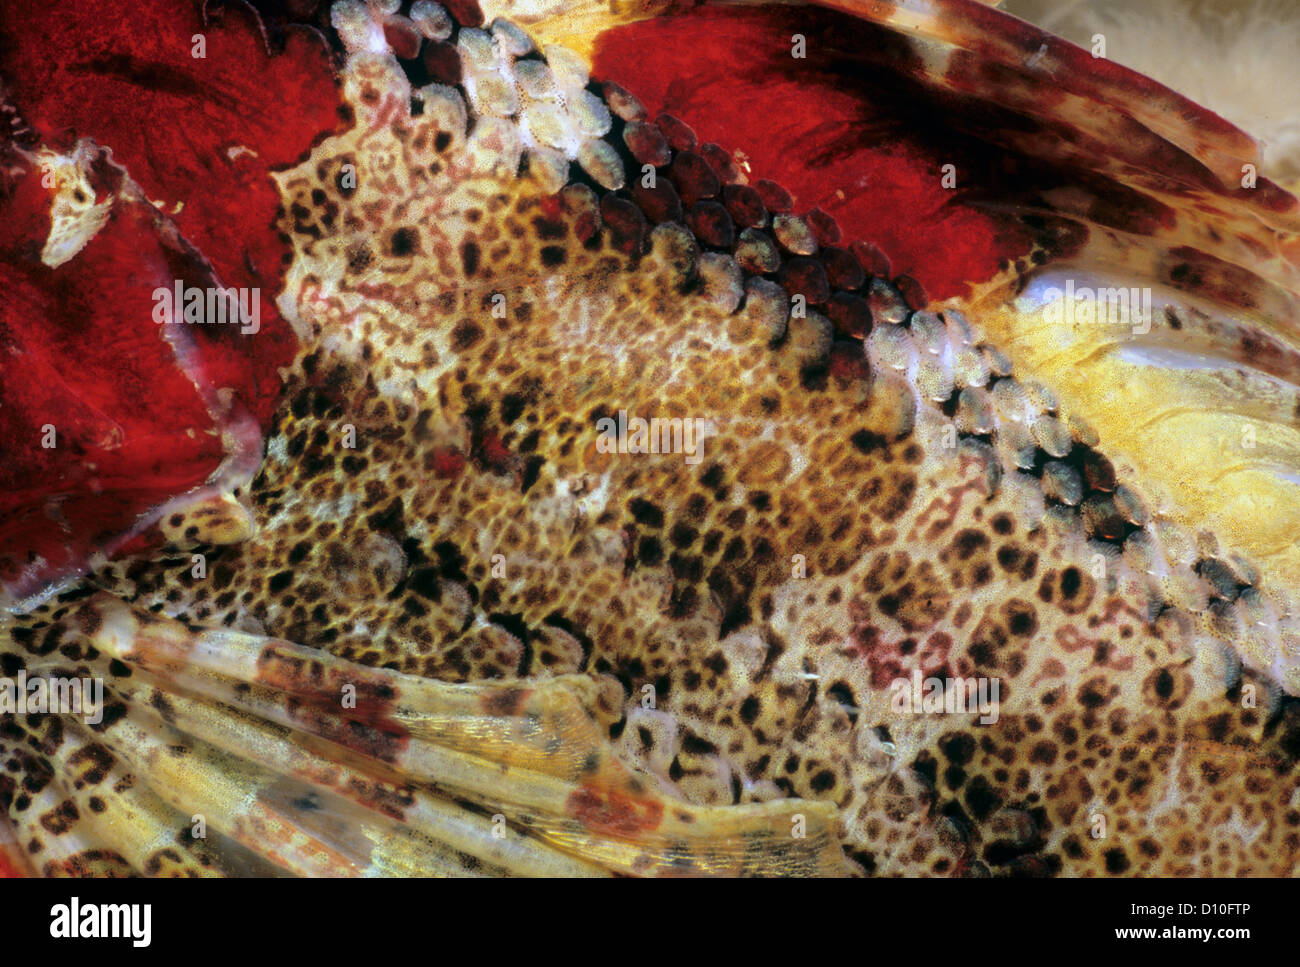 Close-up of Skin of Red Irish Lord (Hemilepidotus hemepidotus). Queen Charlotte Strait, British Columbia, Canada Stock Photo